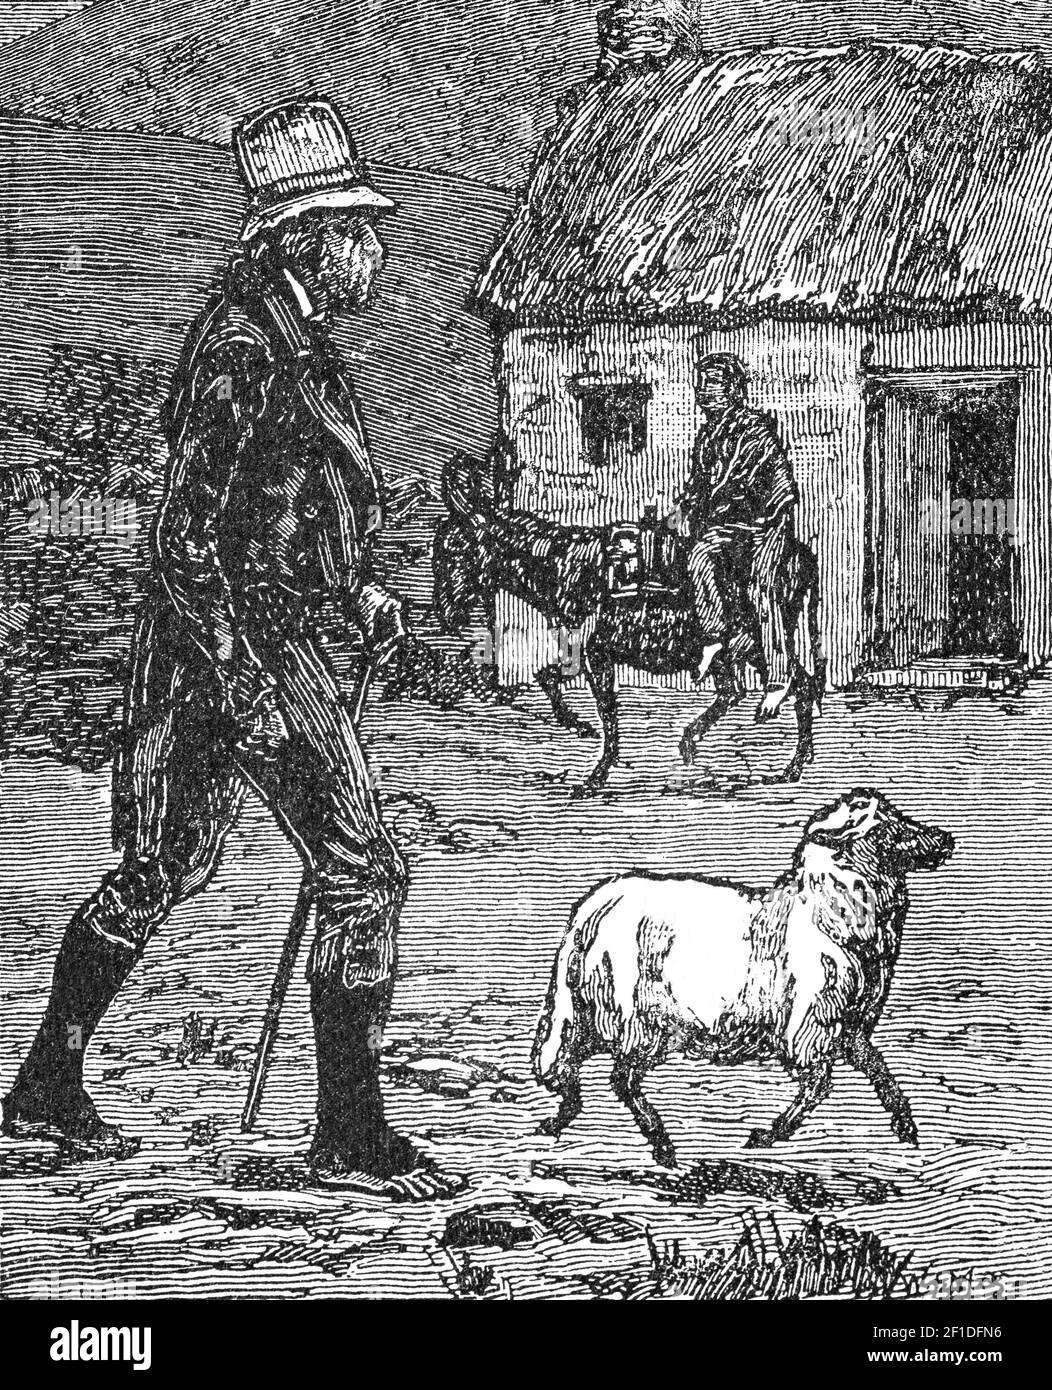 Un dessin illustrant la nature rurale de la vie de rue à Claddagh, ville de Galway au XIXe siècle, en Irlande Banque D'Images